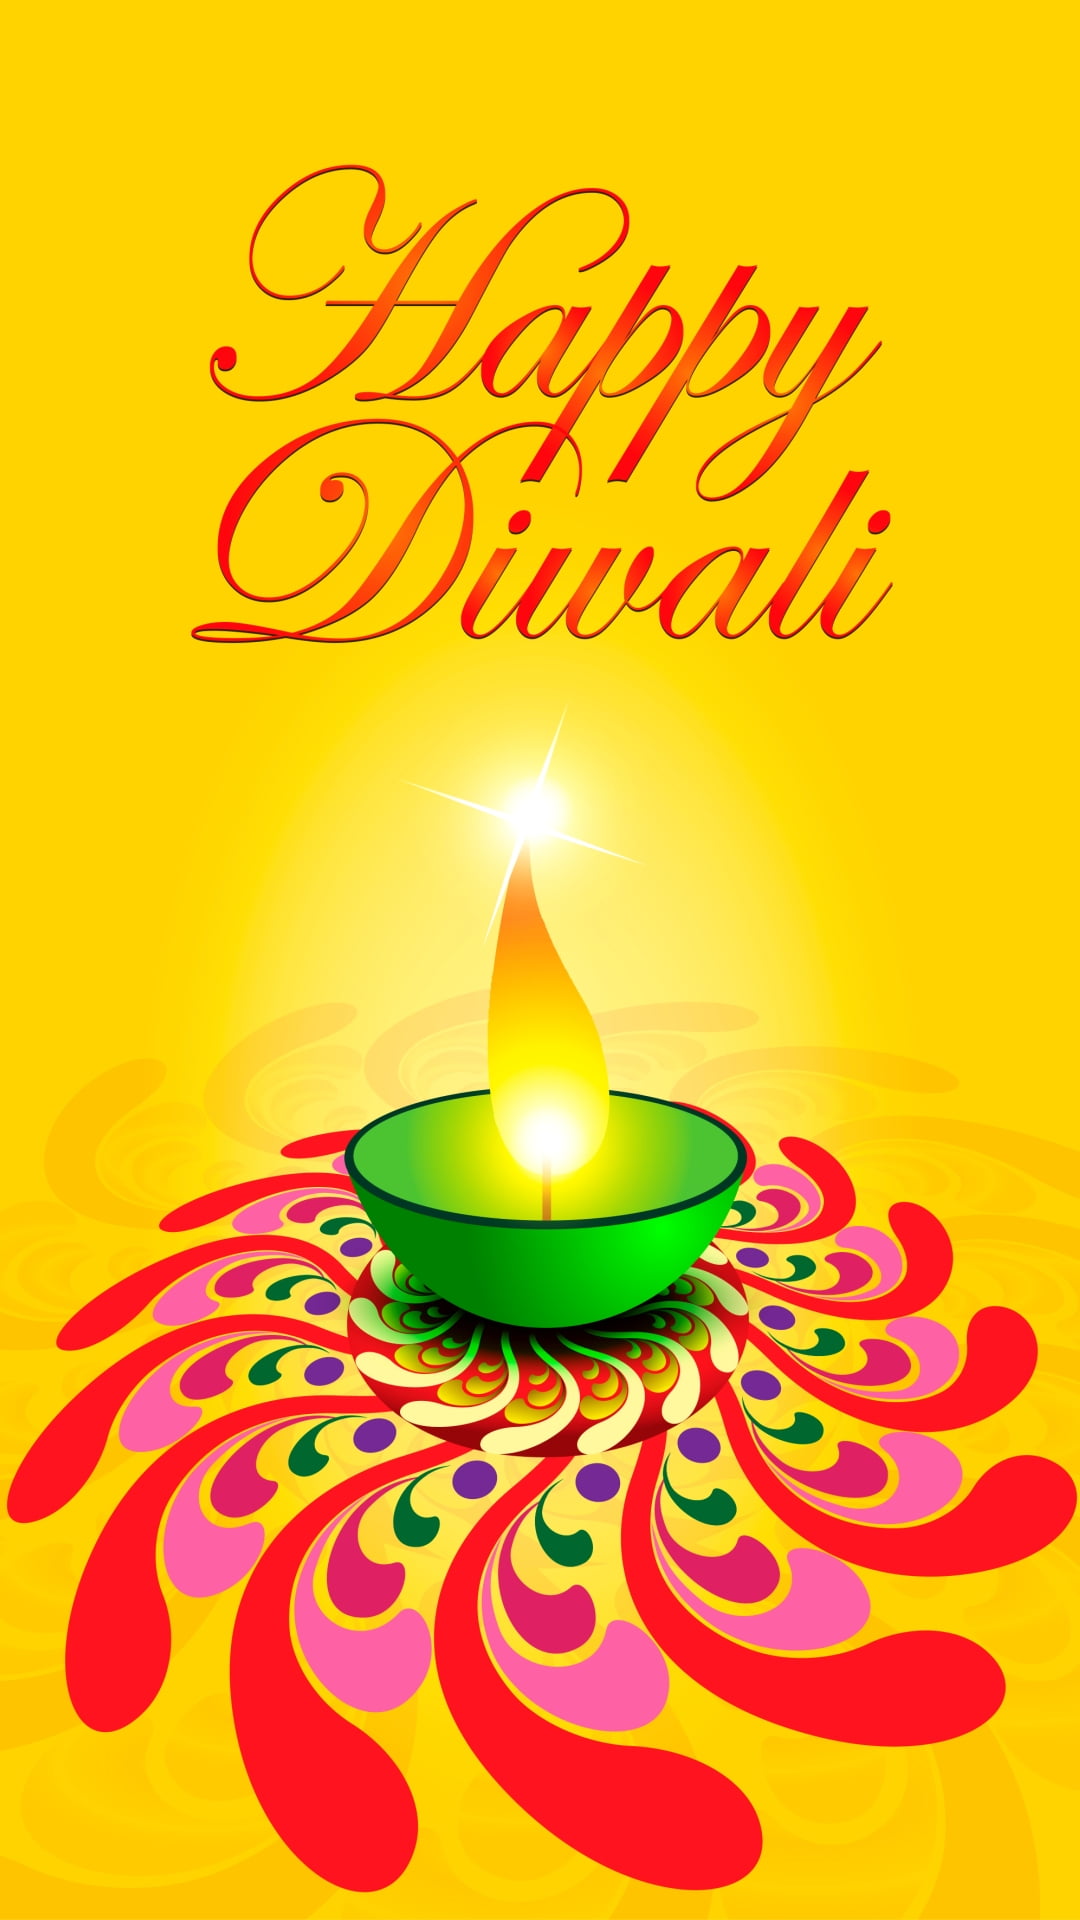 Diwali Wordings, motion, celebration event, no people, illuminated